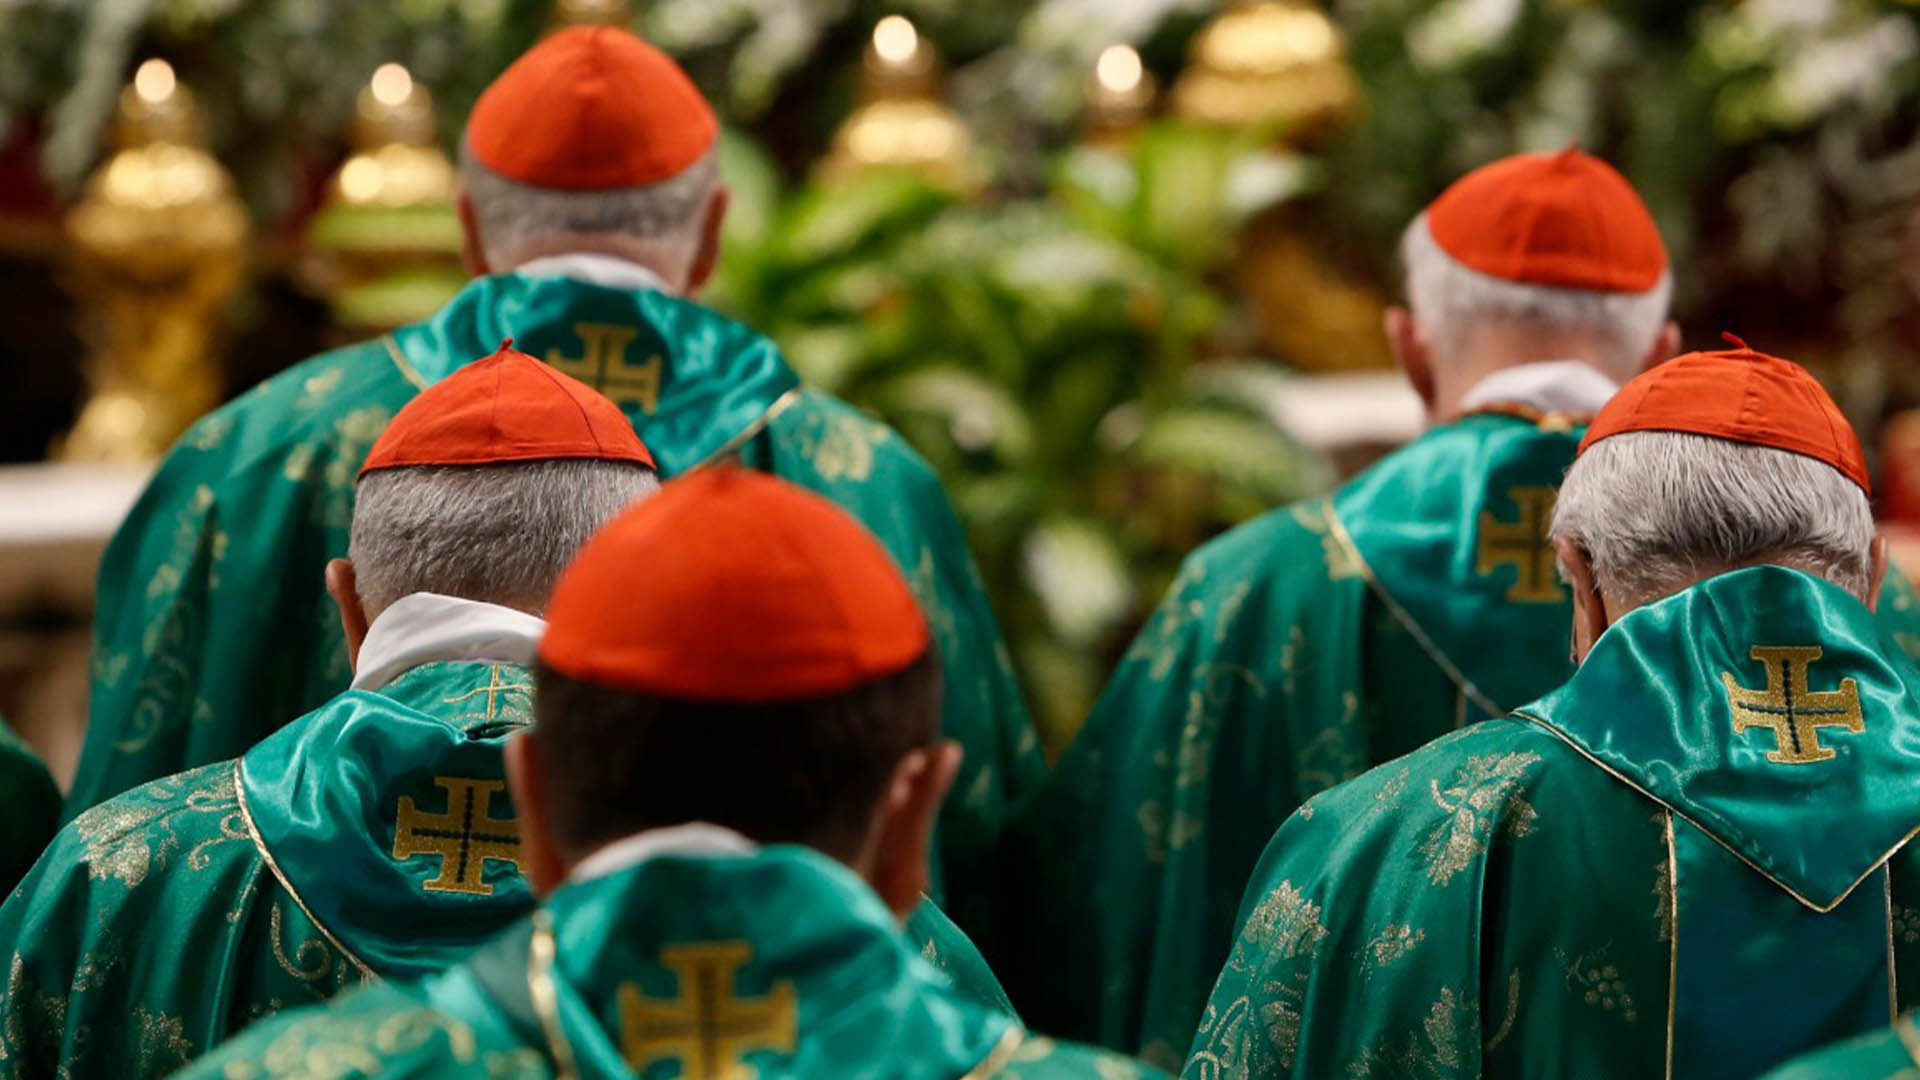 Los Obispos Alemanes quieren cambiar el Catecismo para adaptarlo a la Moral actual